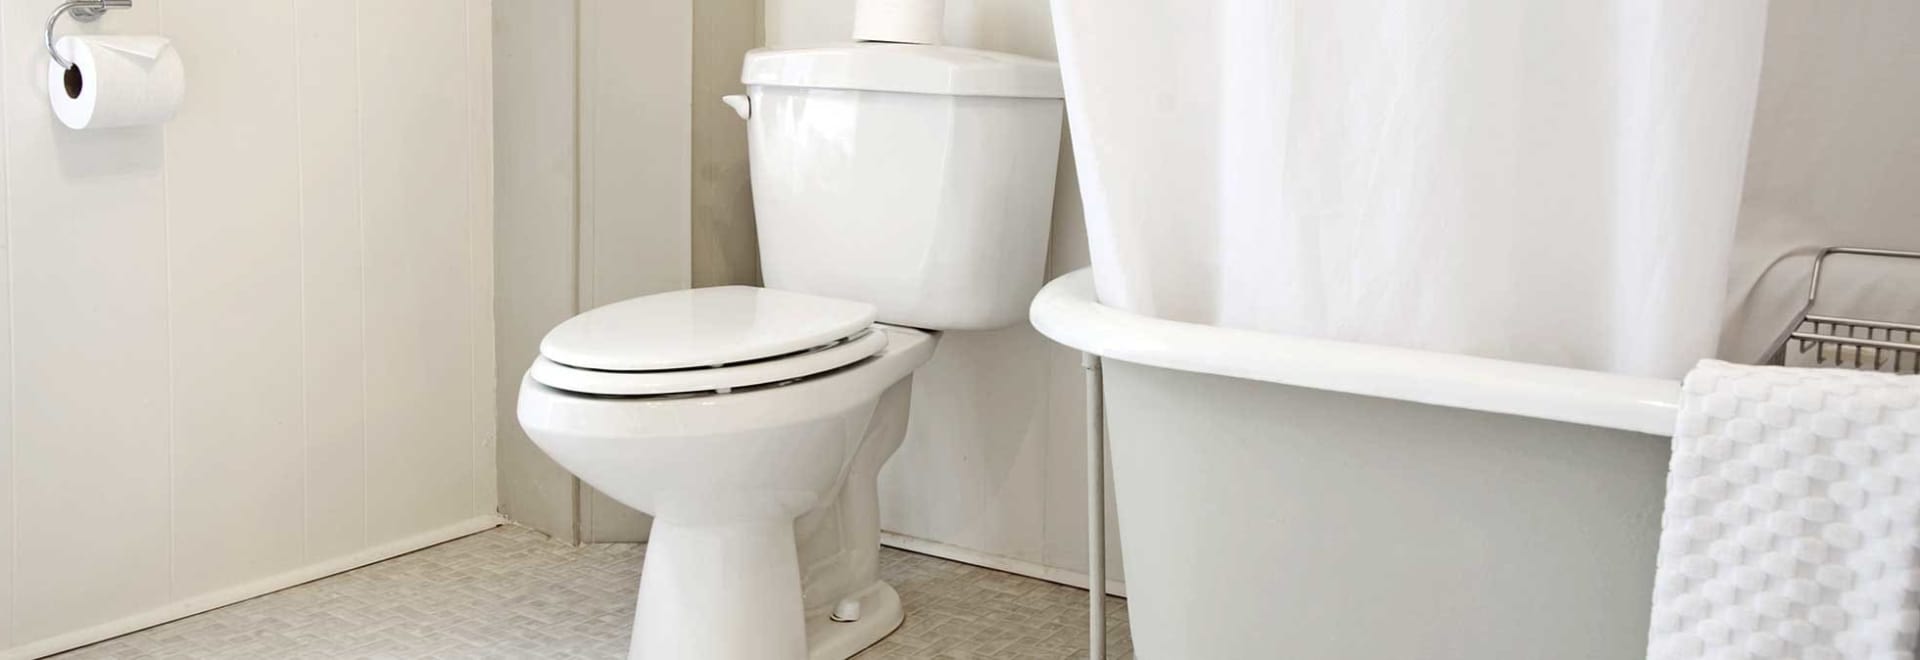 Image of a white toilet